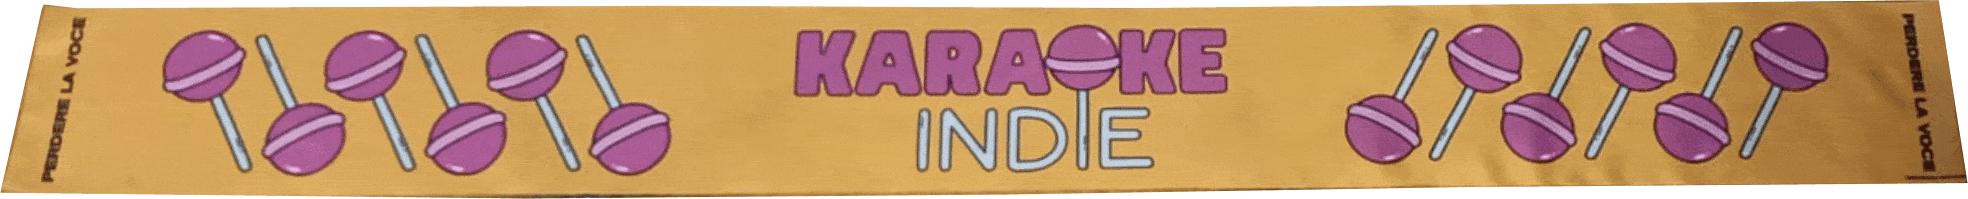 sciarpa karaoke indie